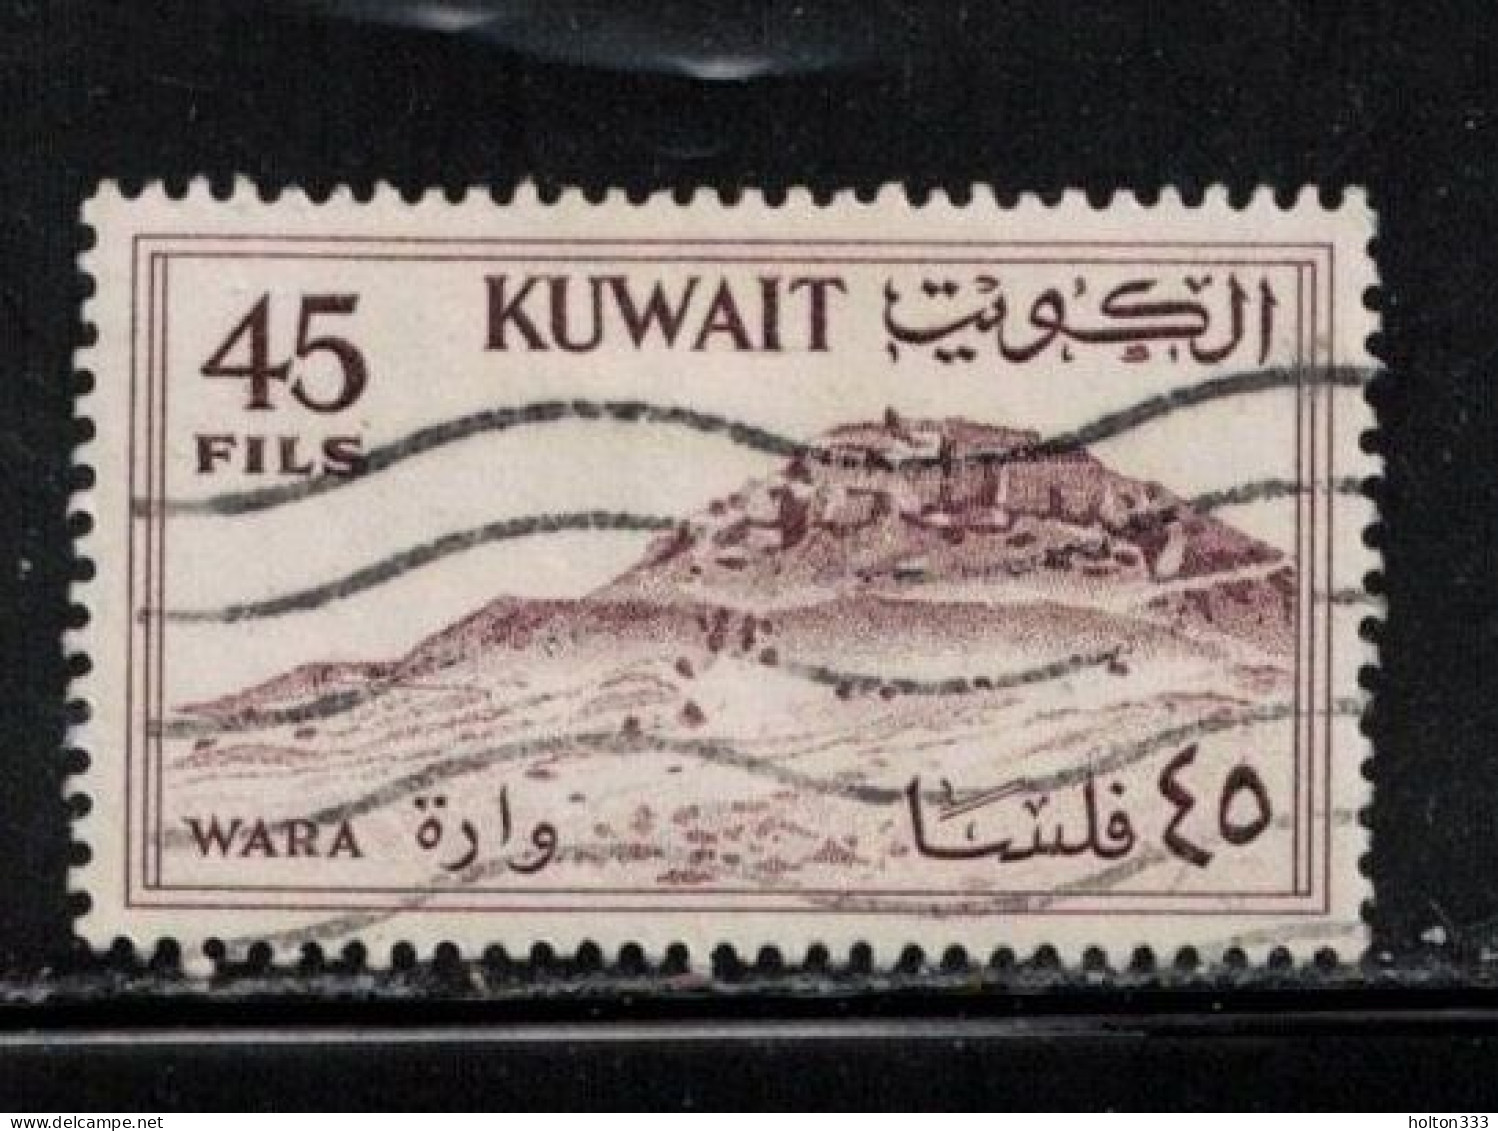 KUWAIT Scott # 166 Used - Wara Hill, Burgan Oil Field - Kuwait